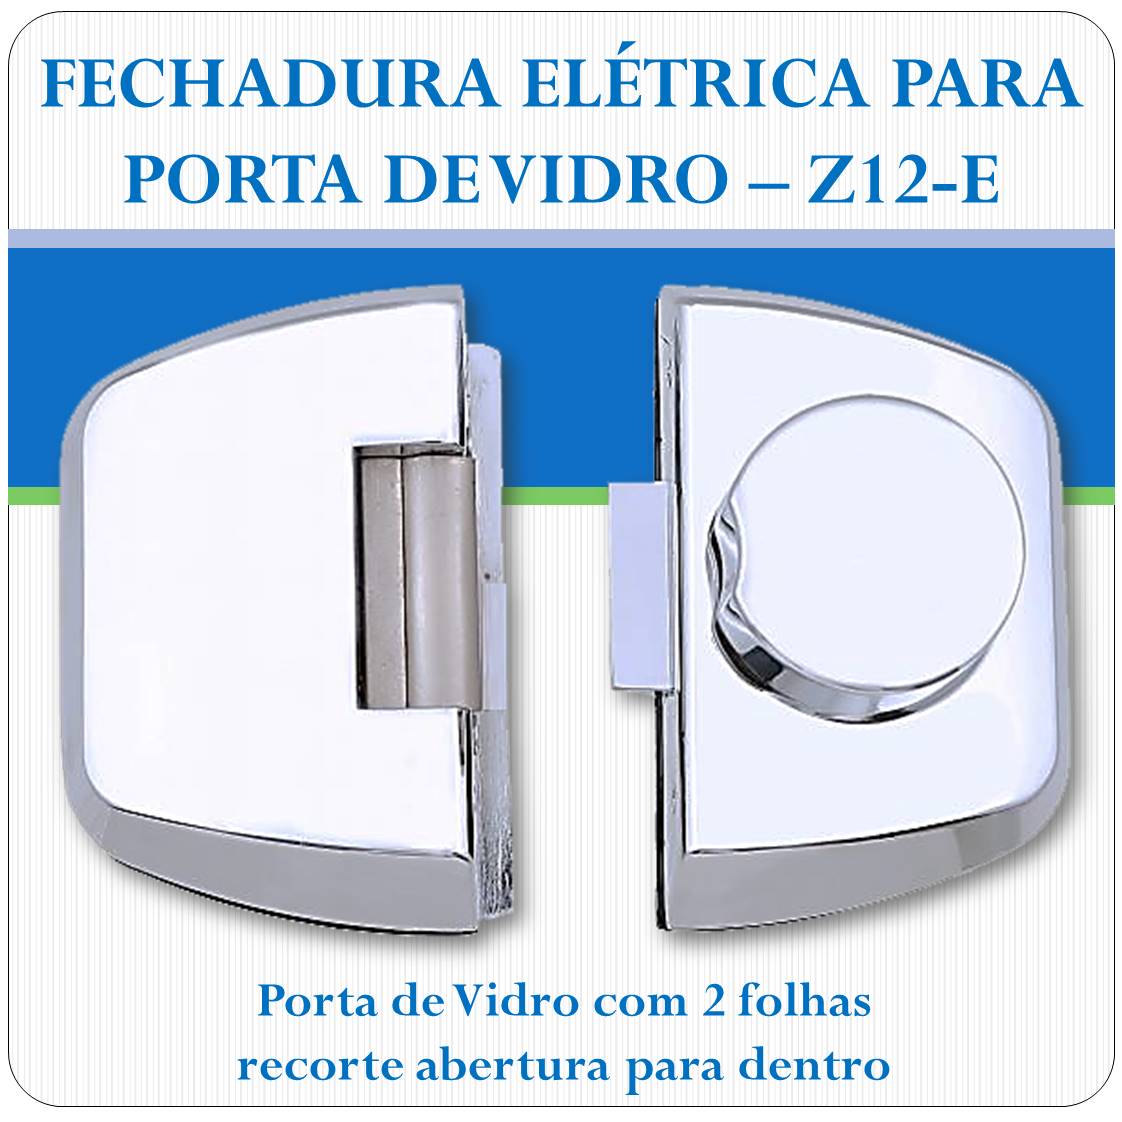 Fechadura Eletrica Porta de Vidro - Z-12E